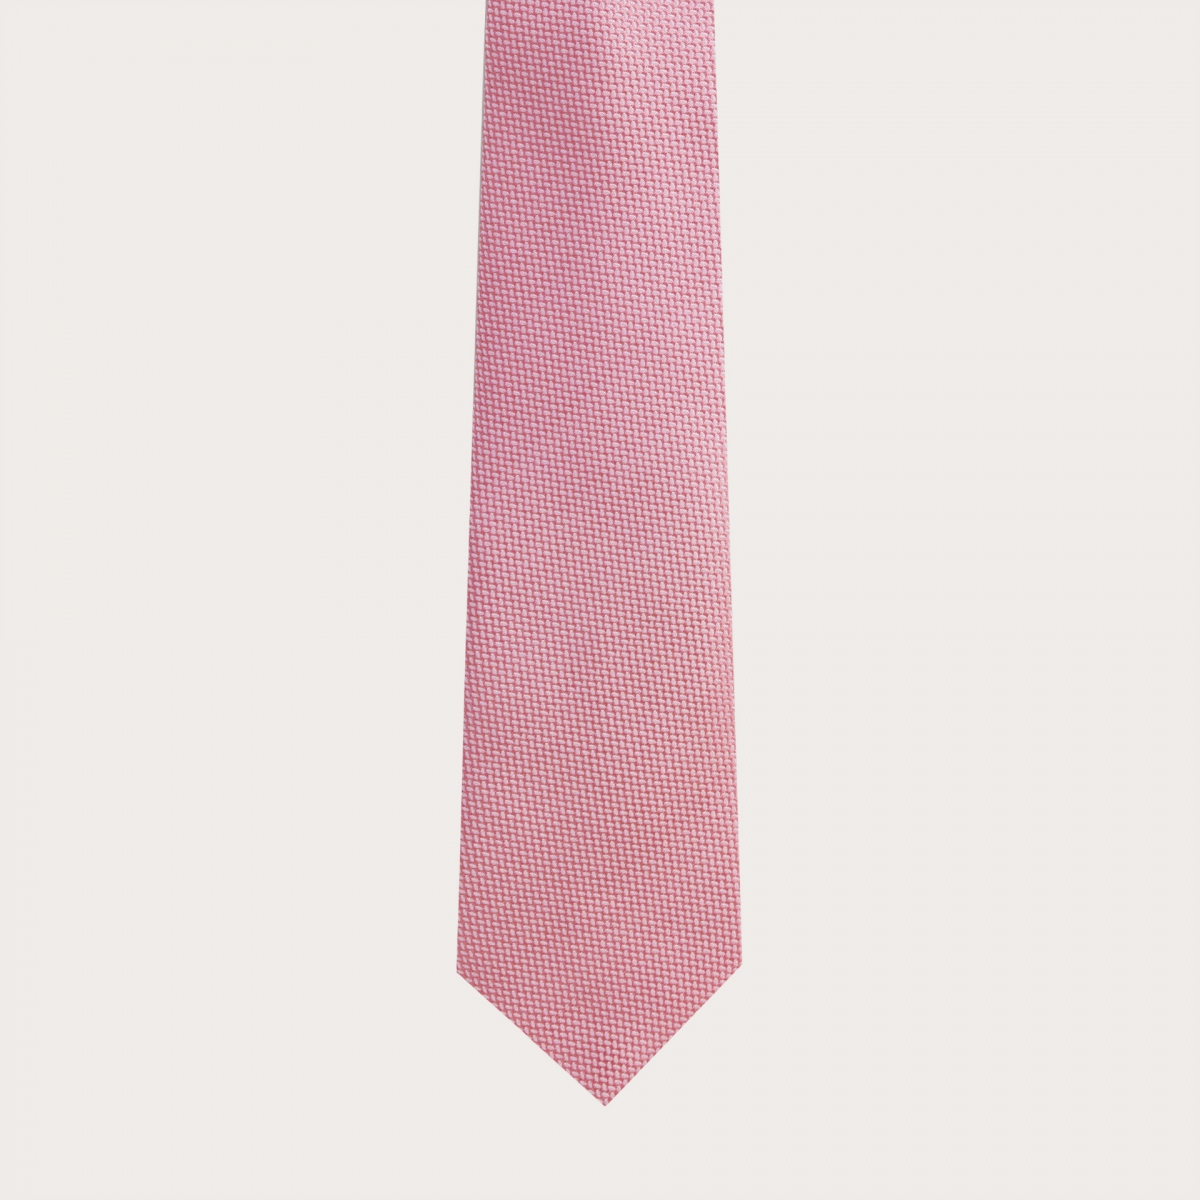 Cravatta in seta jacquard, rosa